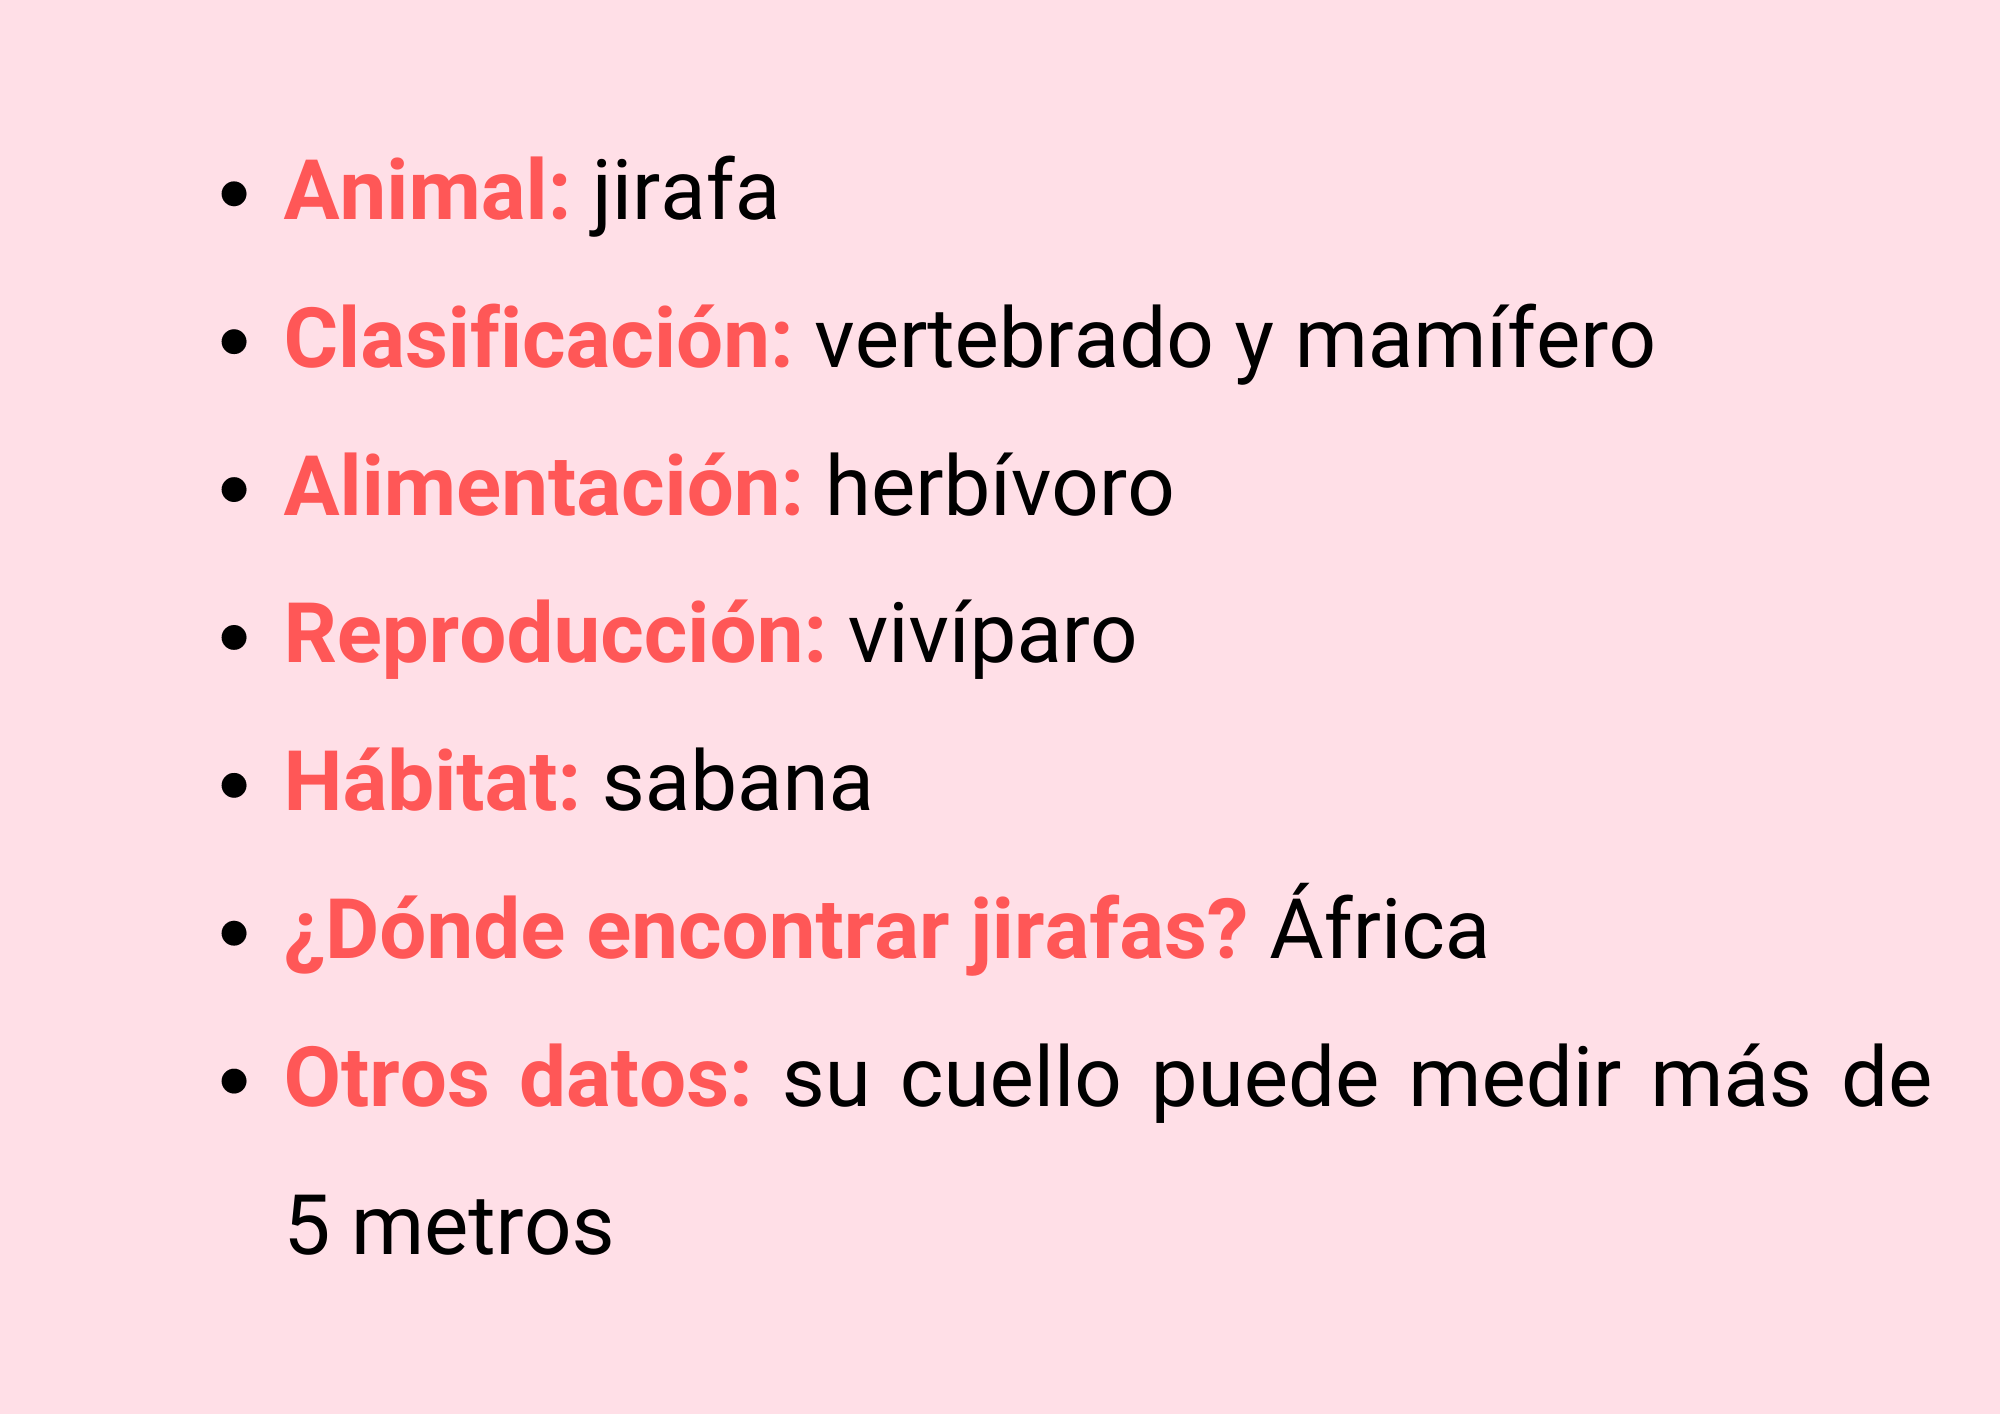 Animal: Jirafa, Clasificación: vertebrado, mamífero, Alimentación: herbívoro